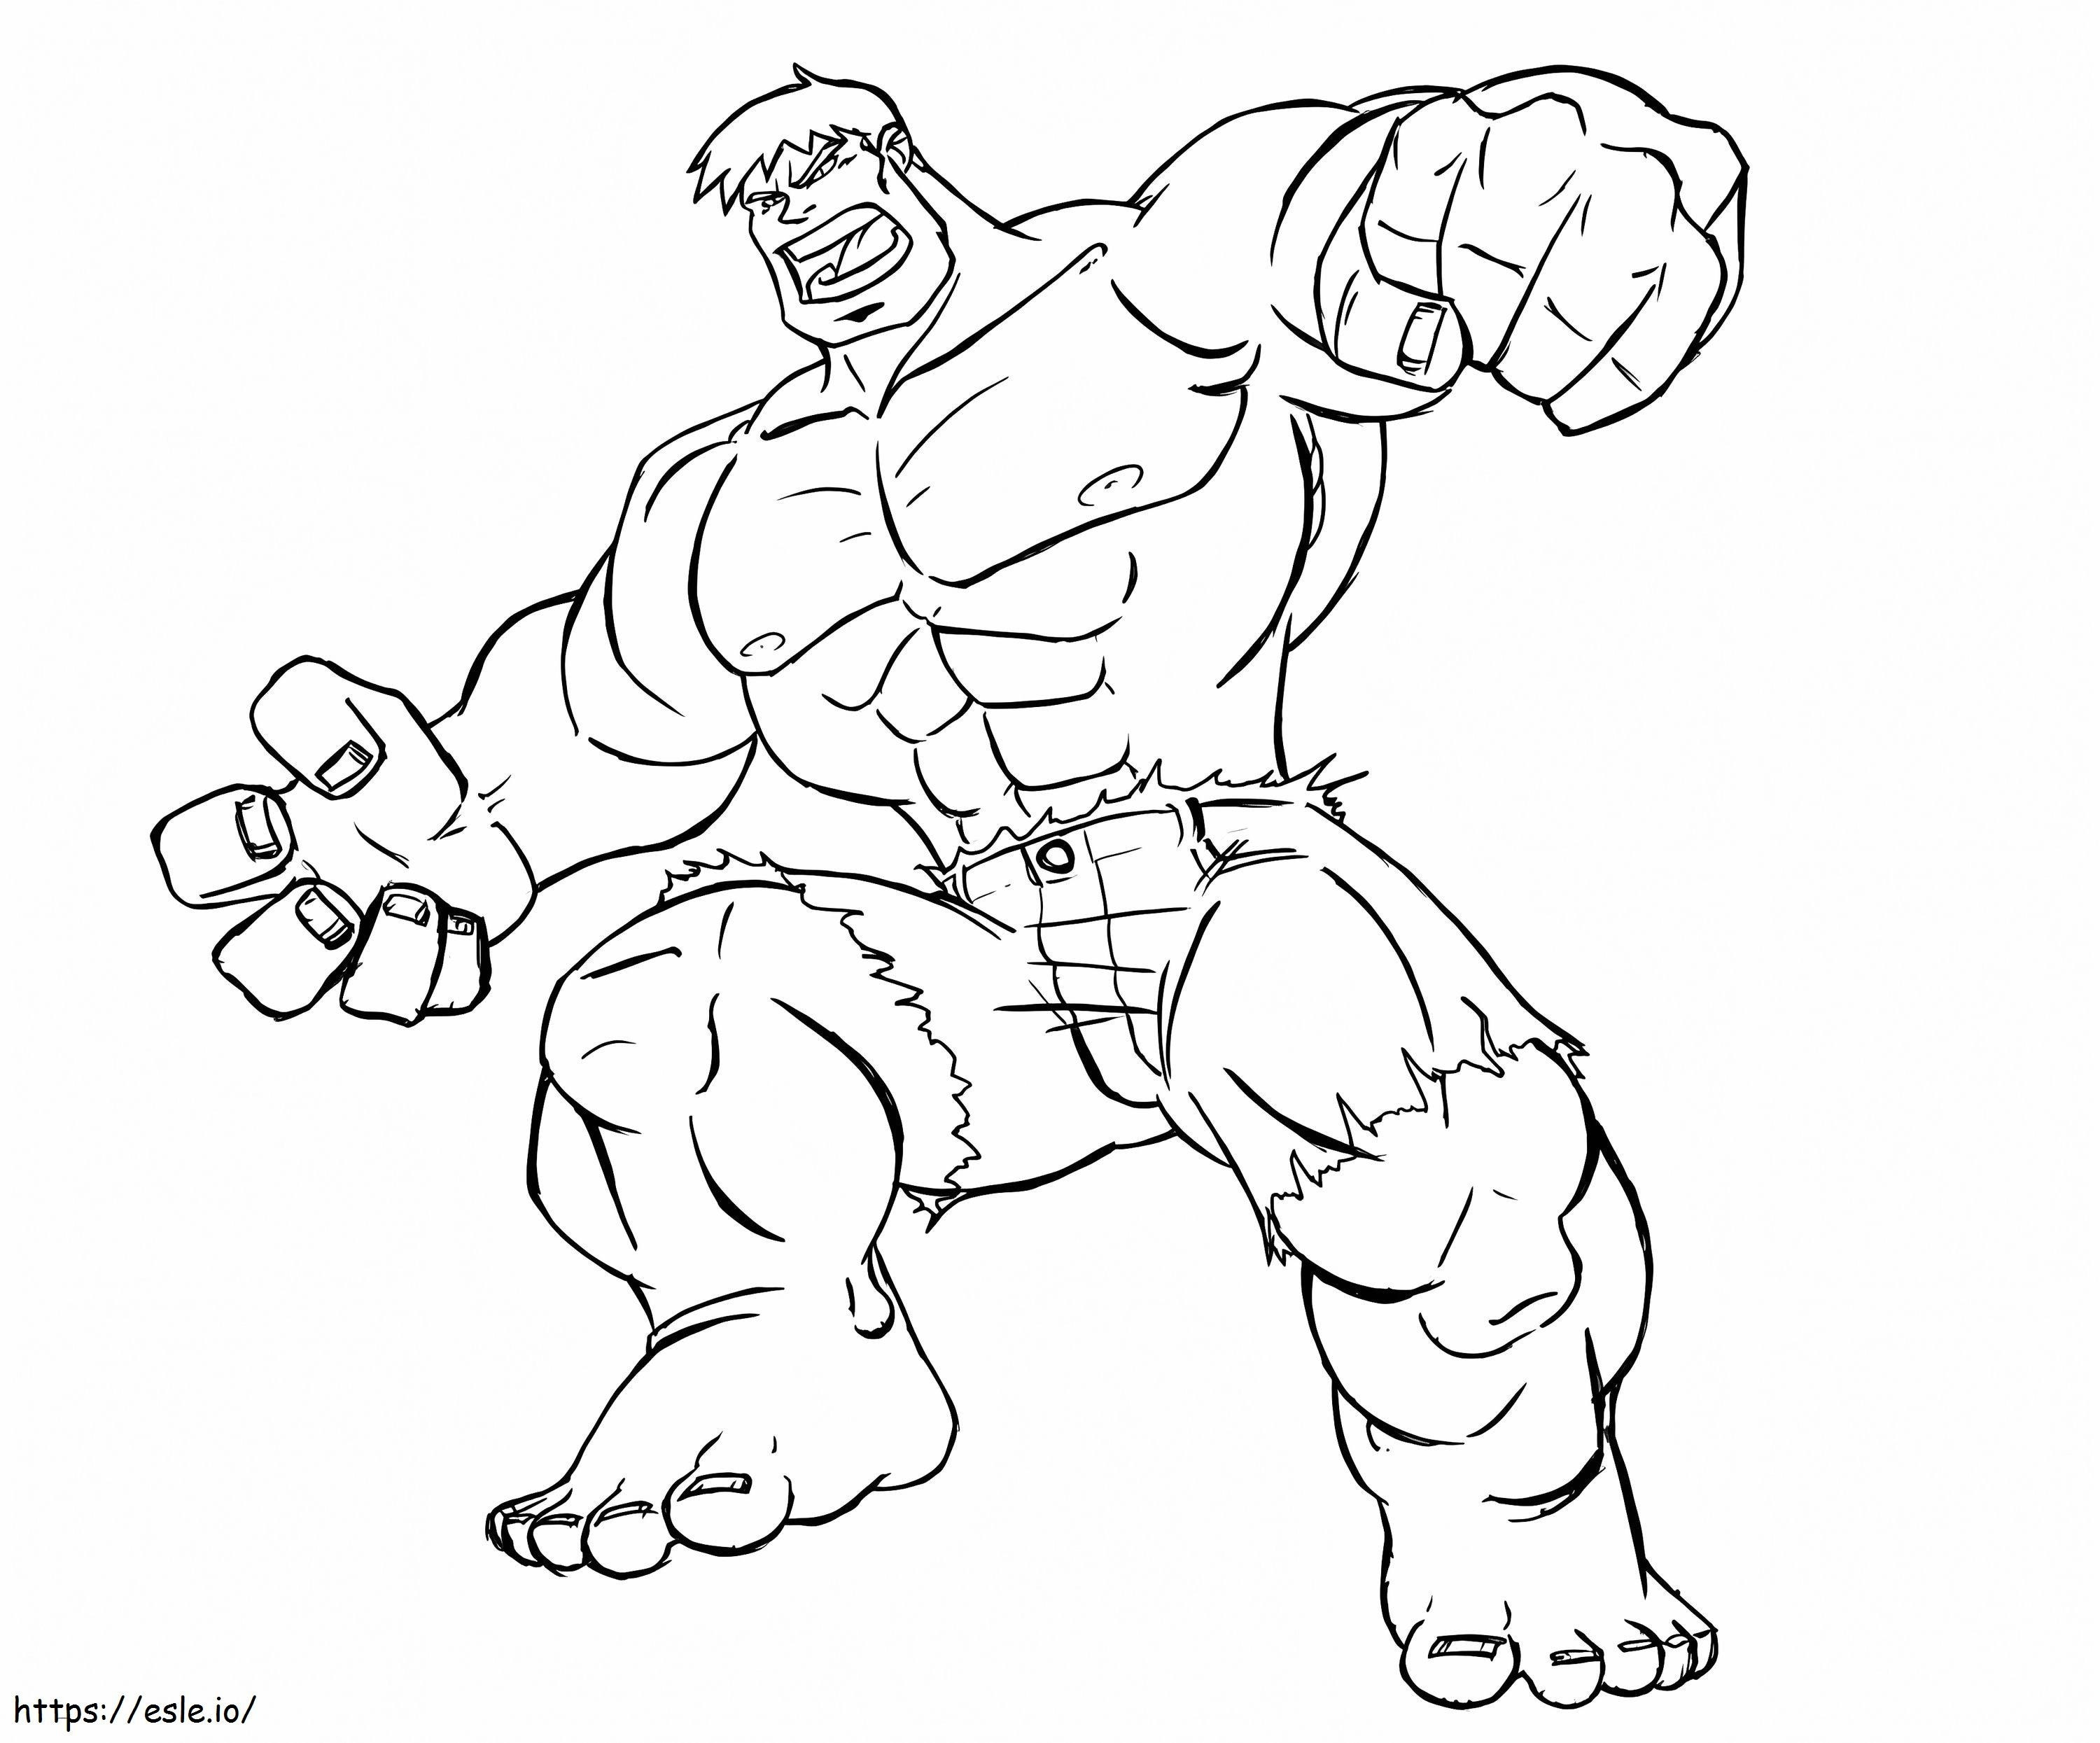 Erstaunlicher Hulk ausmalbilder